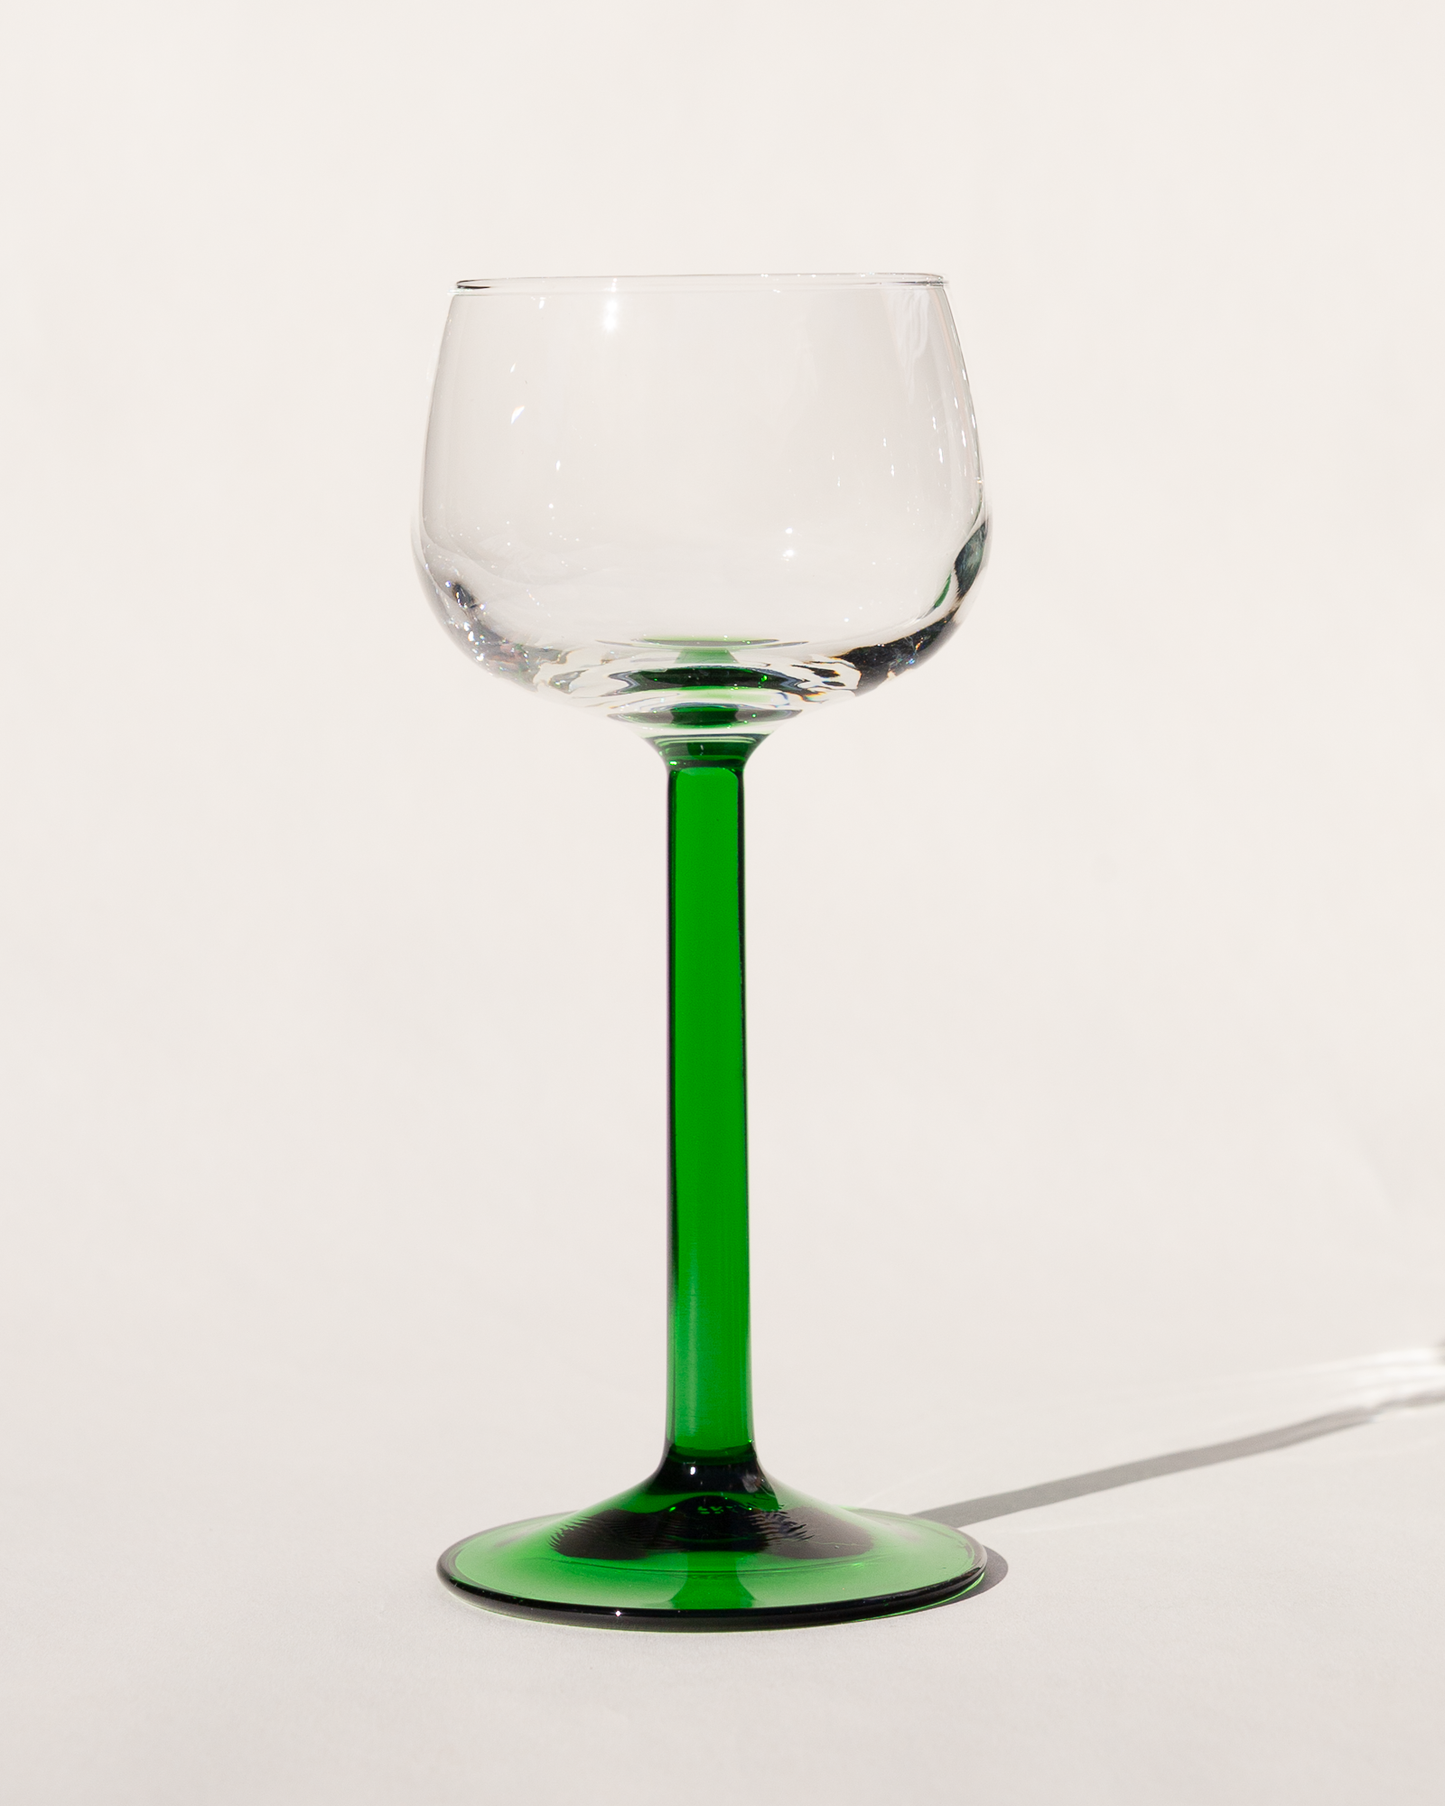 Emerald Stem Wine Glasses